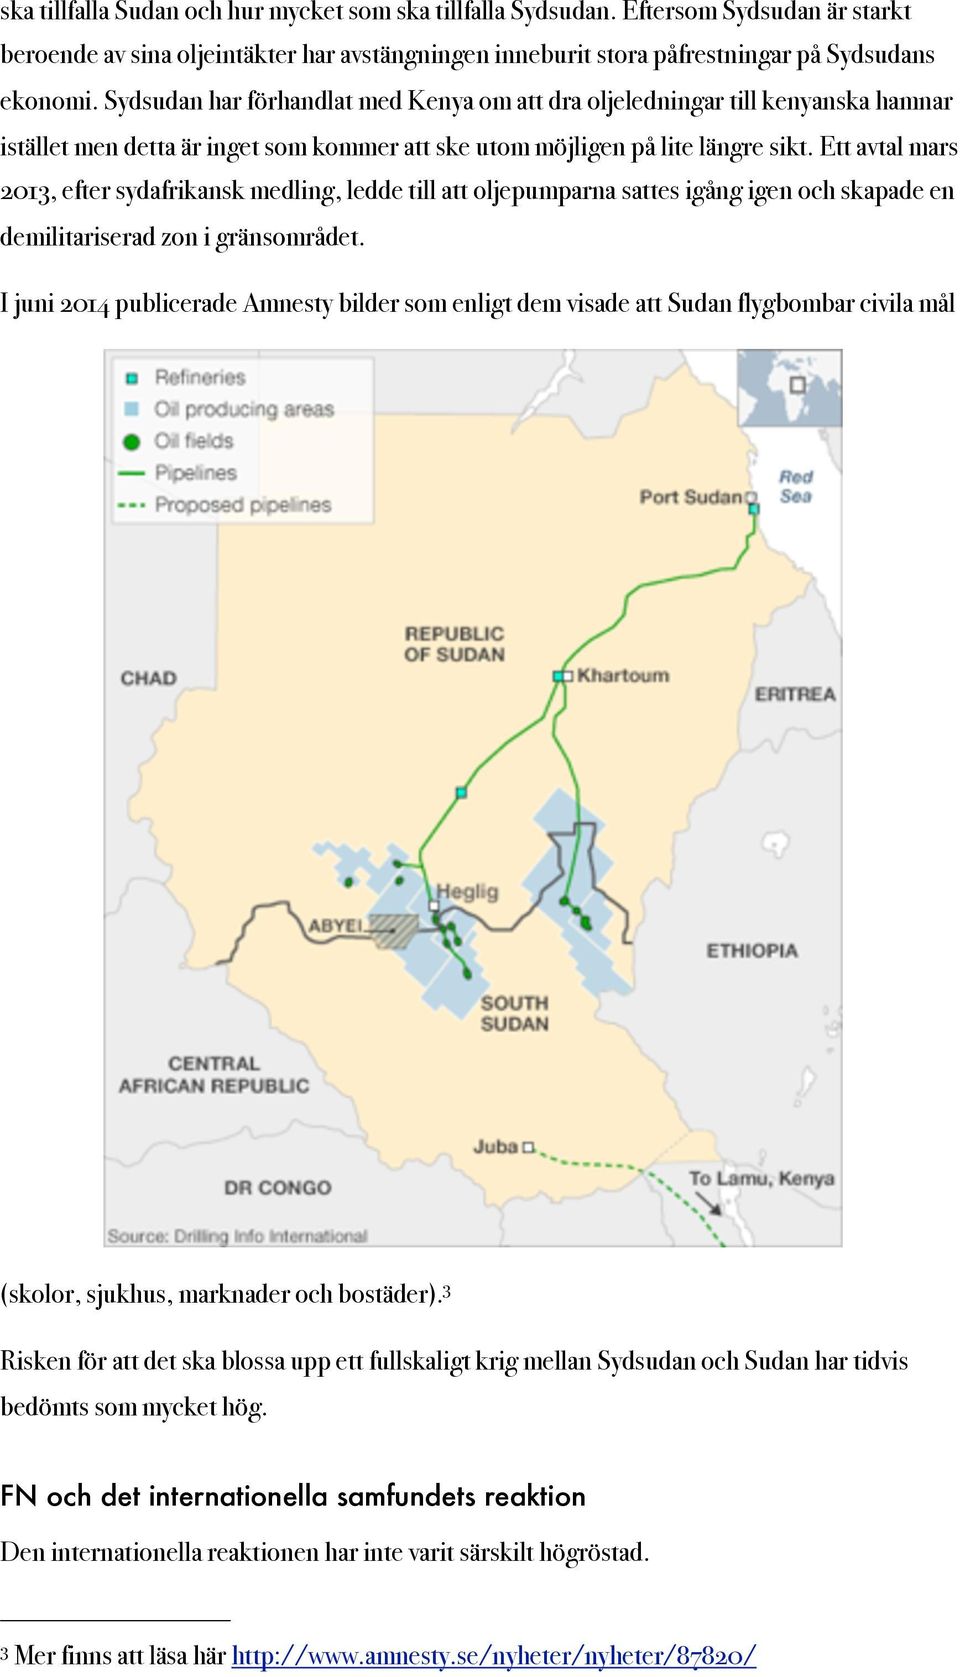 Ett avtal mars 2013, efter sydafrikansk medling, ledde till att oljepumparna sattes igång igen och skapade en demilitariserad zon i gränsområdet.